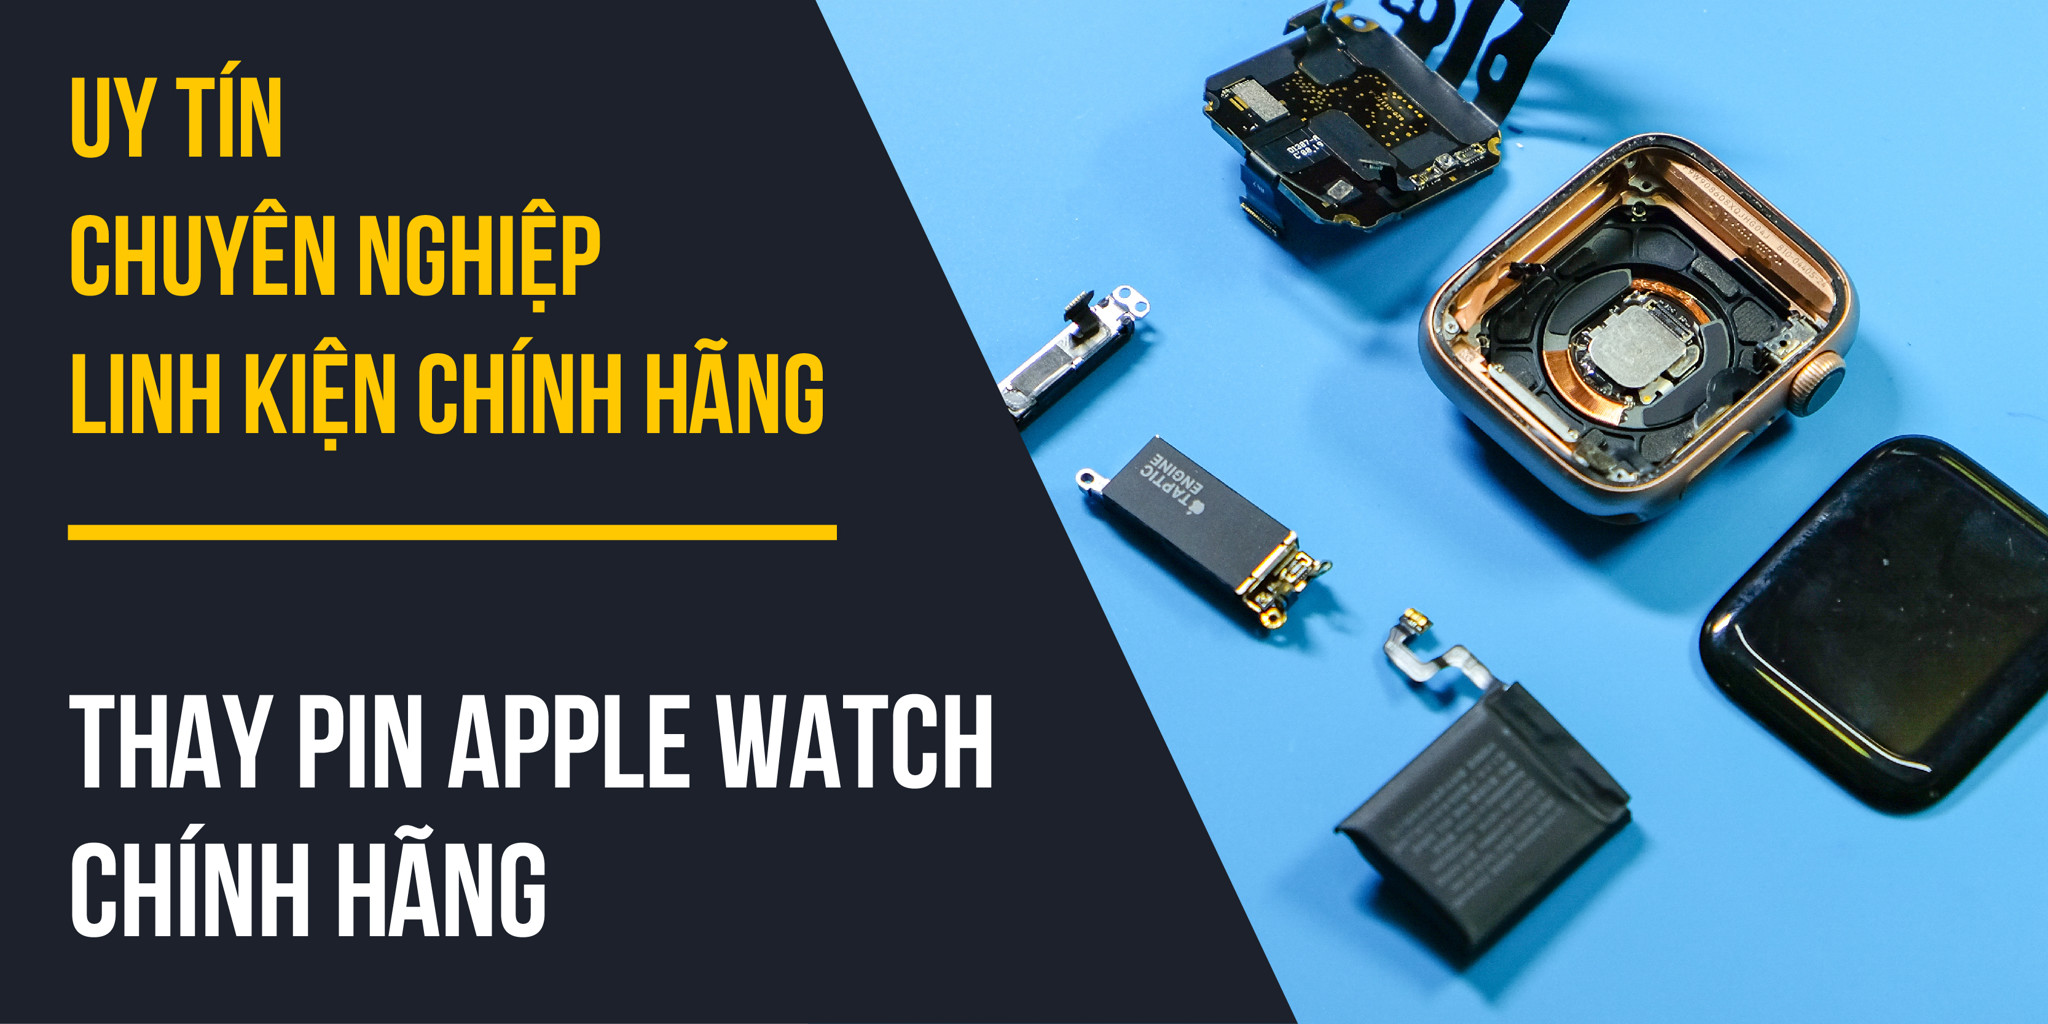 Dịch thay Pin Apple Watch chính hãng tại Biên Hoà và TP. Hồ Chí Minh